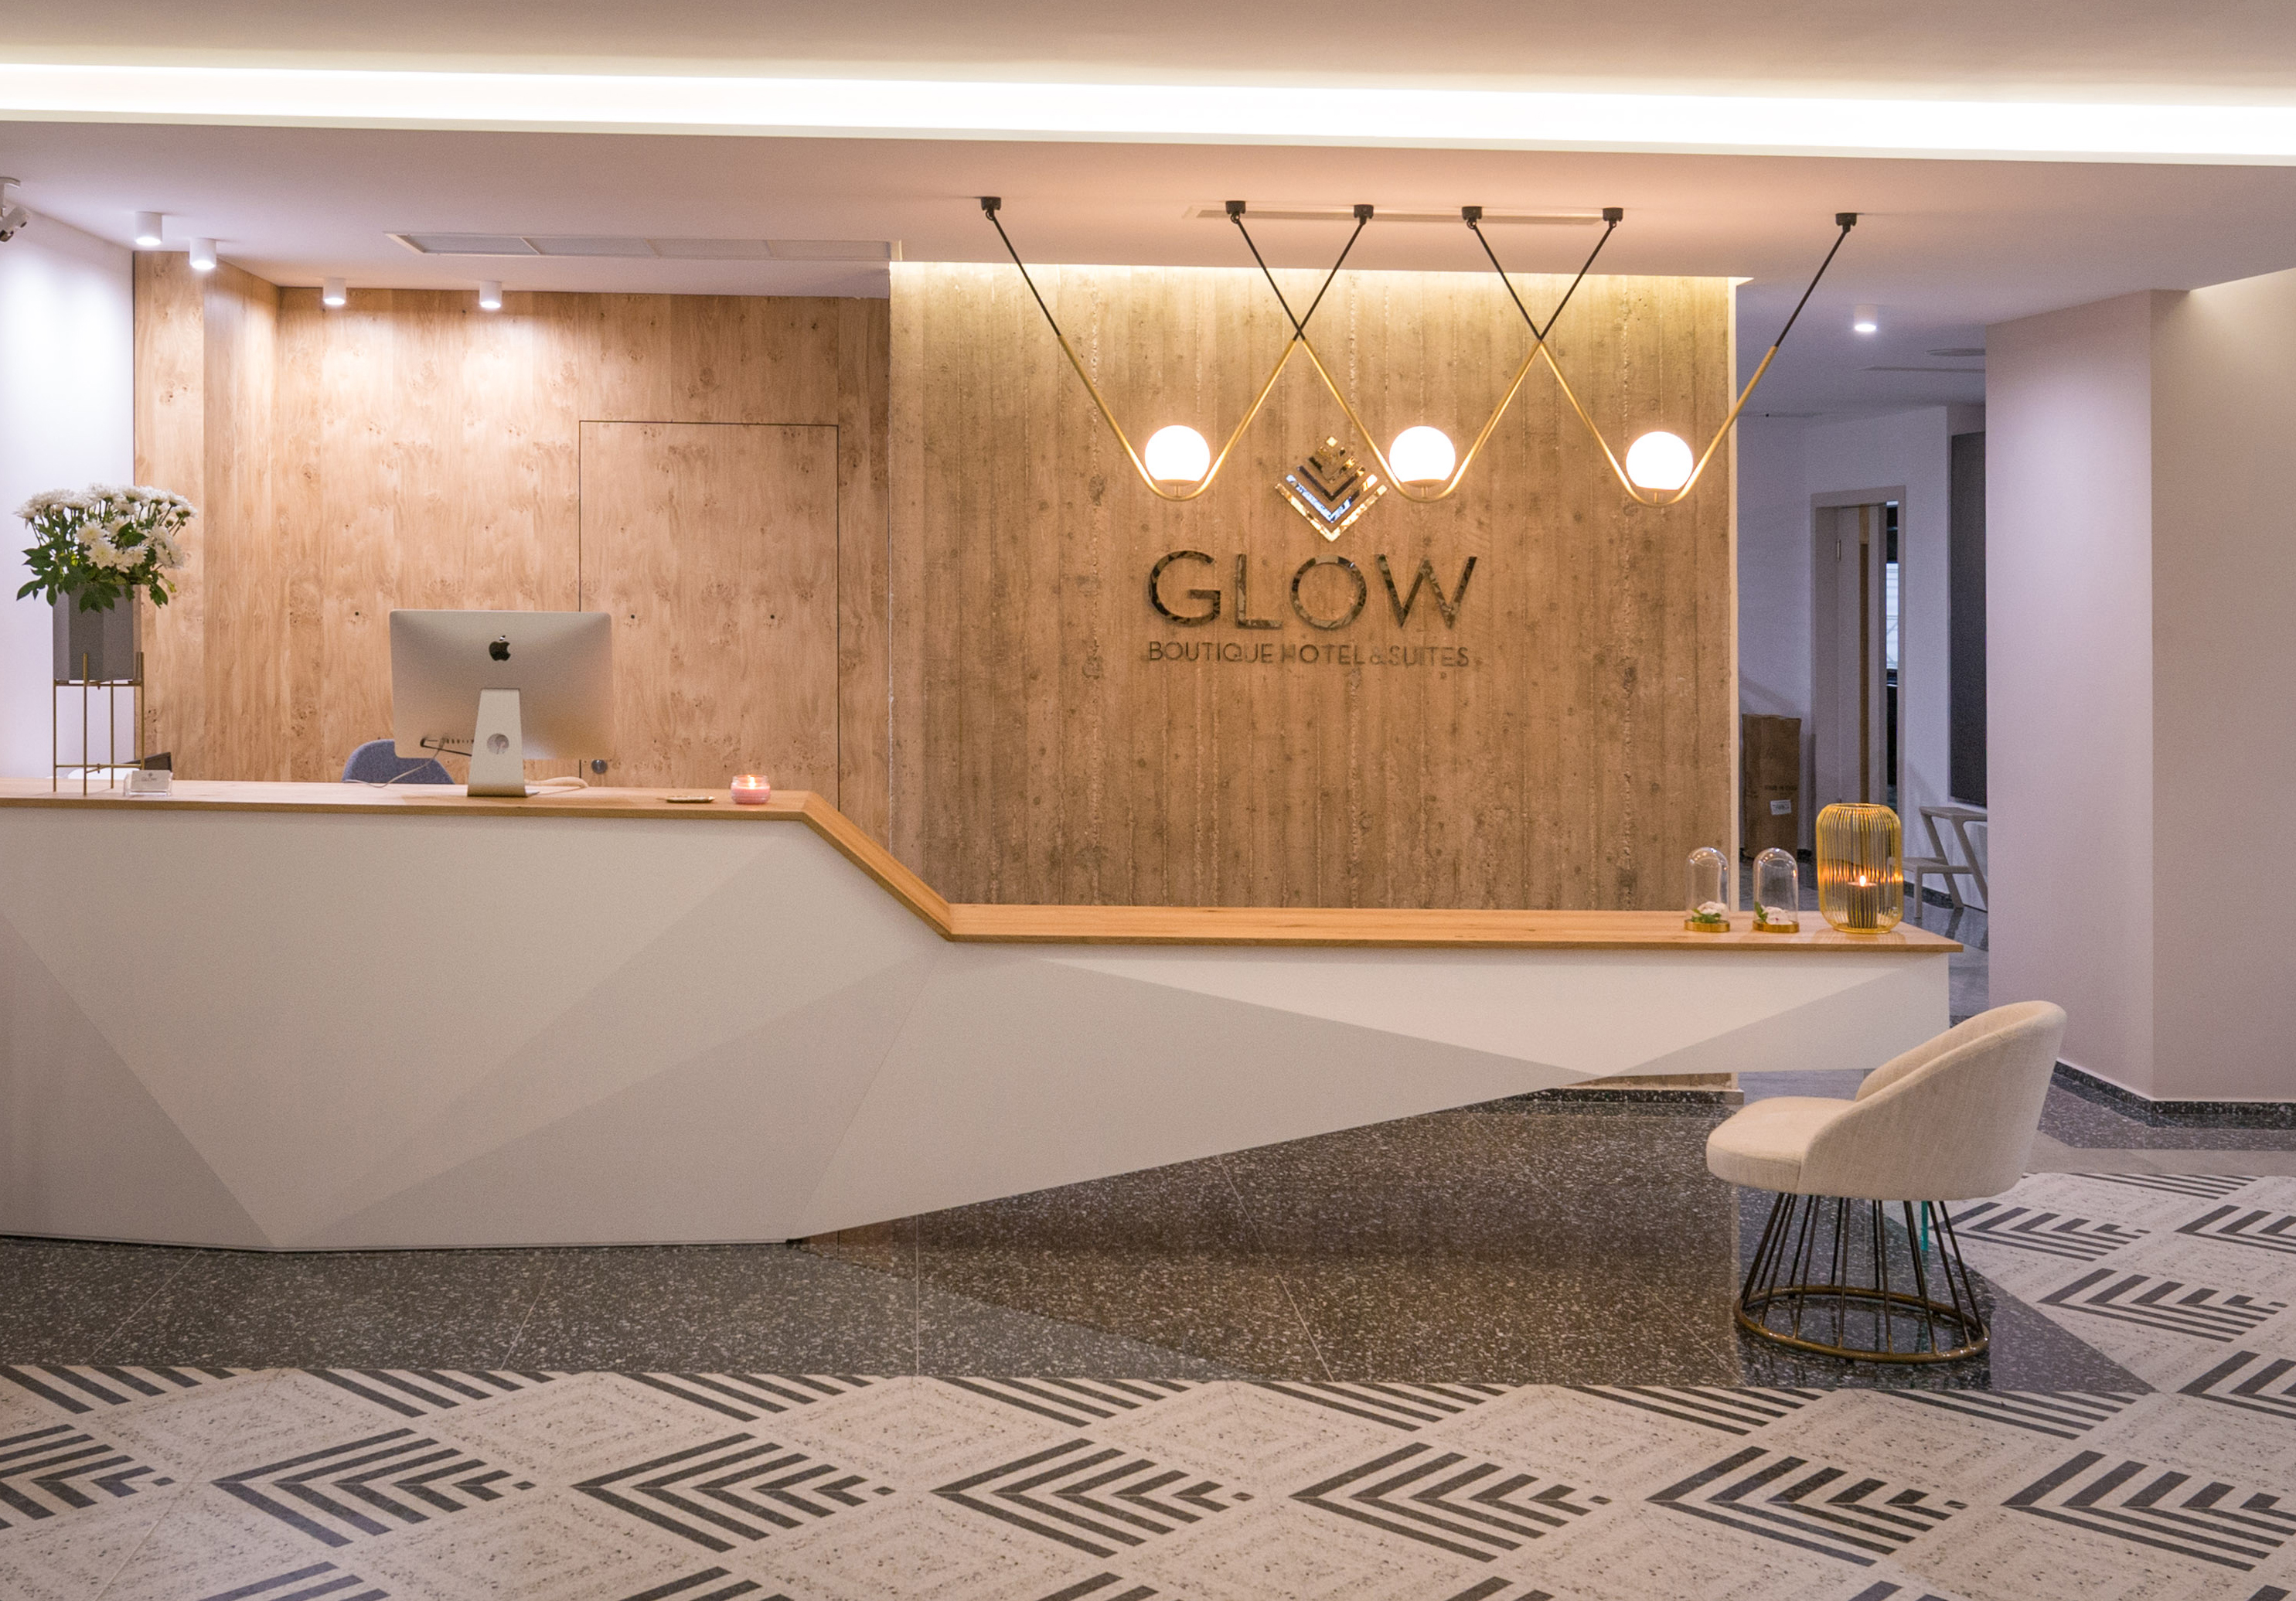 Glow Boutique Hotel & Suites50